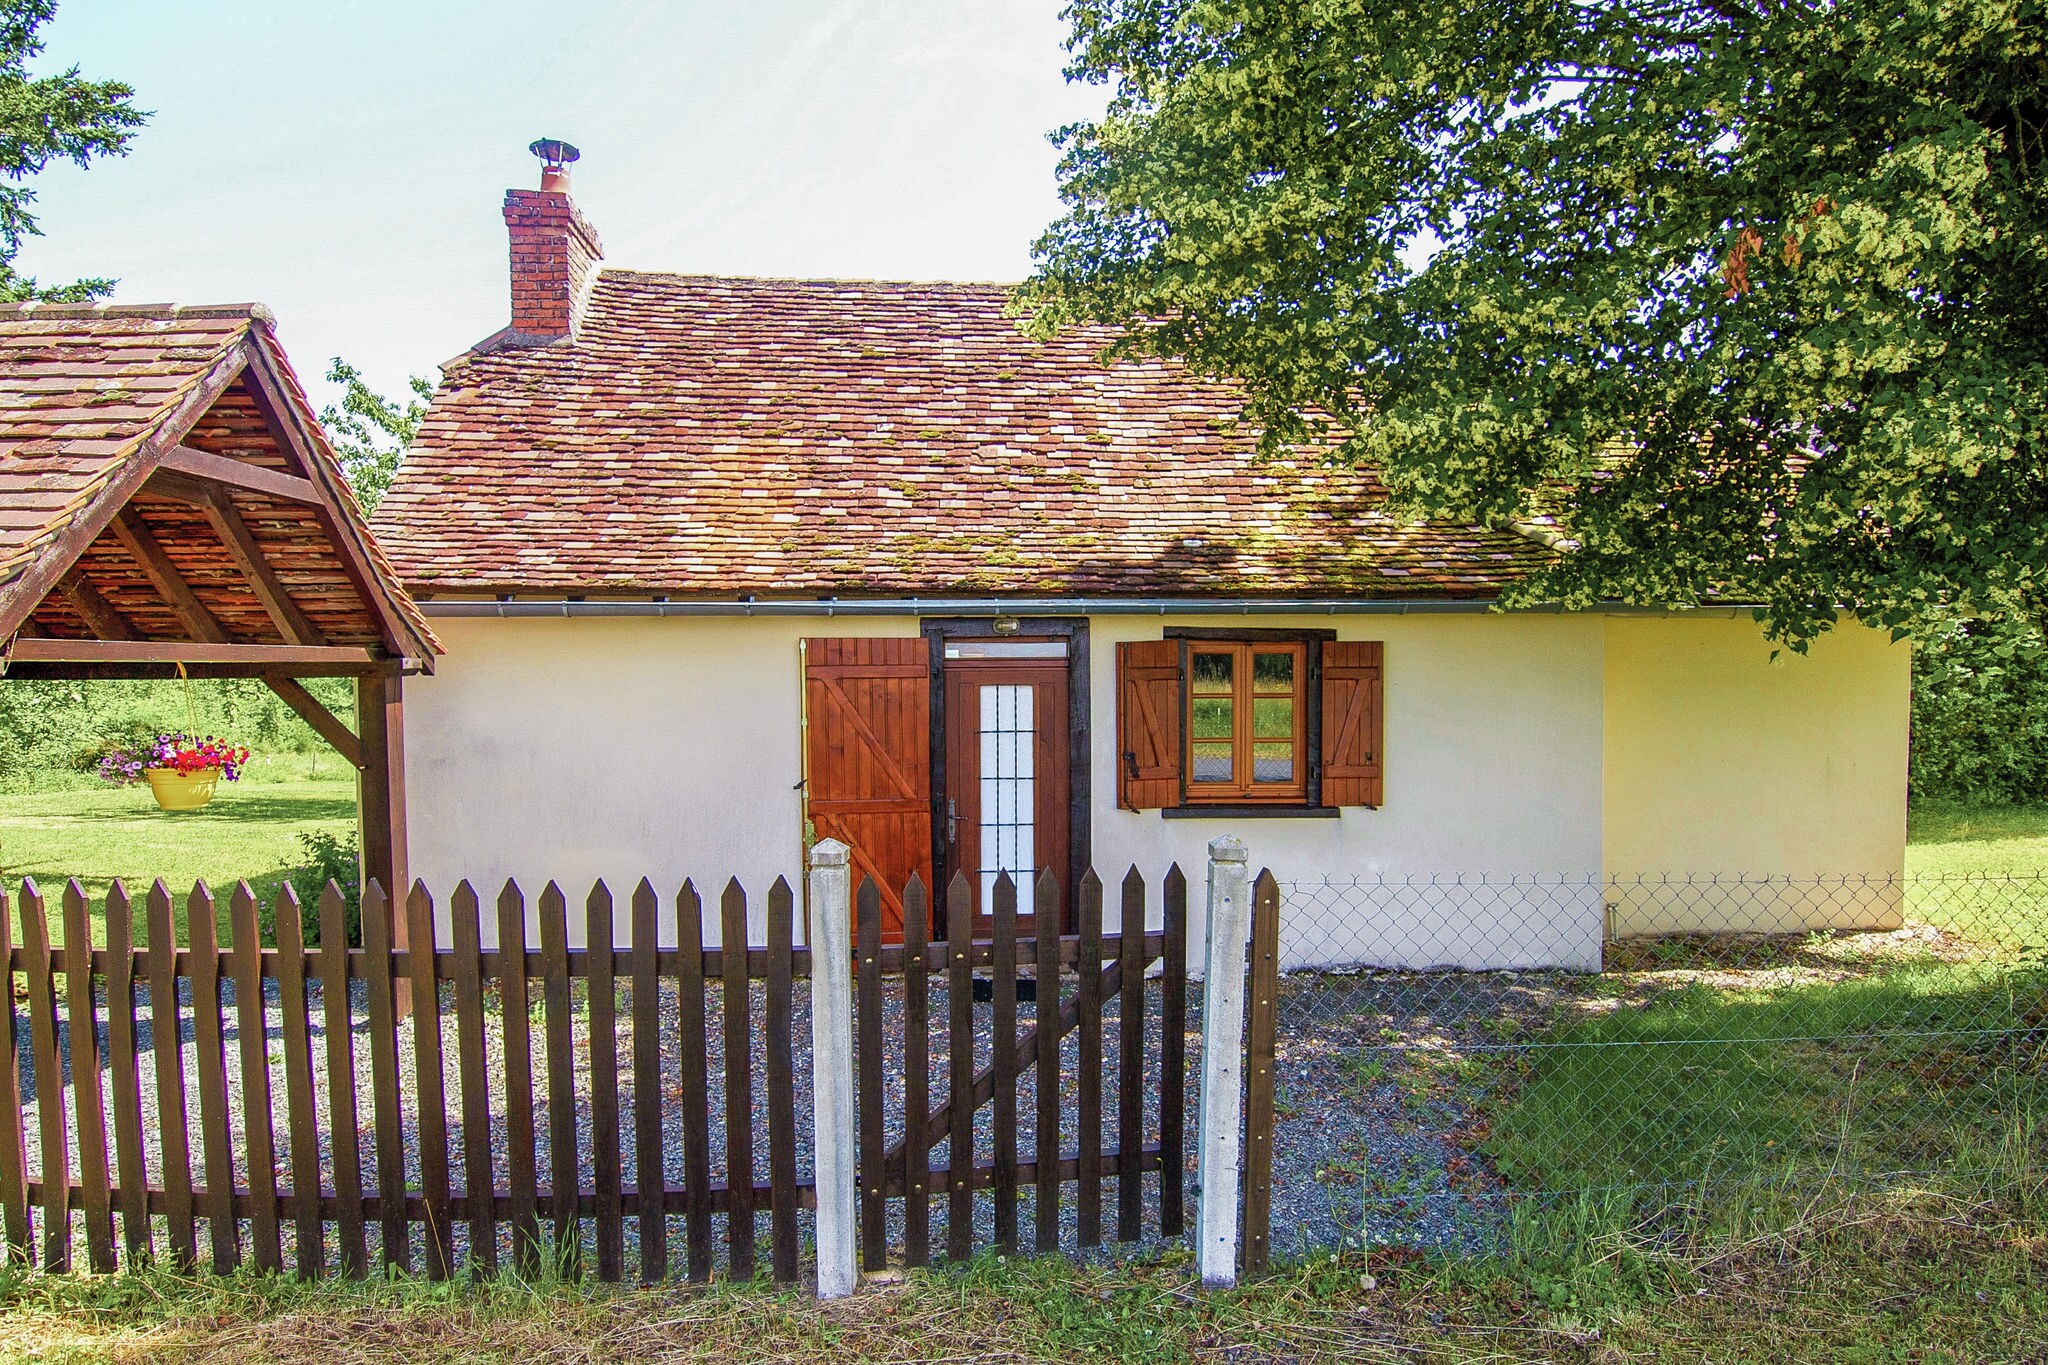 Welcoming cottage in Savignac-Lédrier with garden